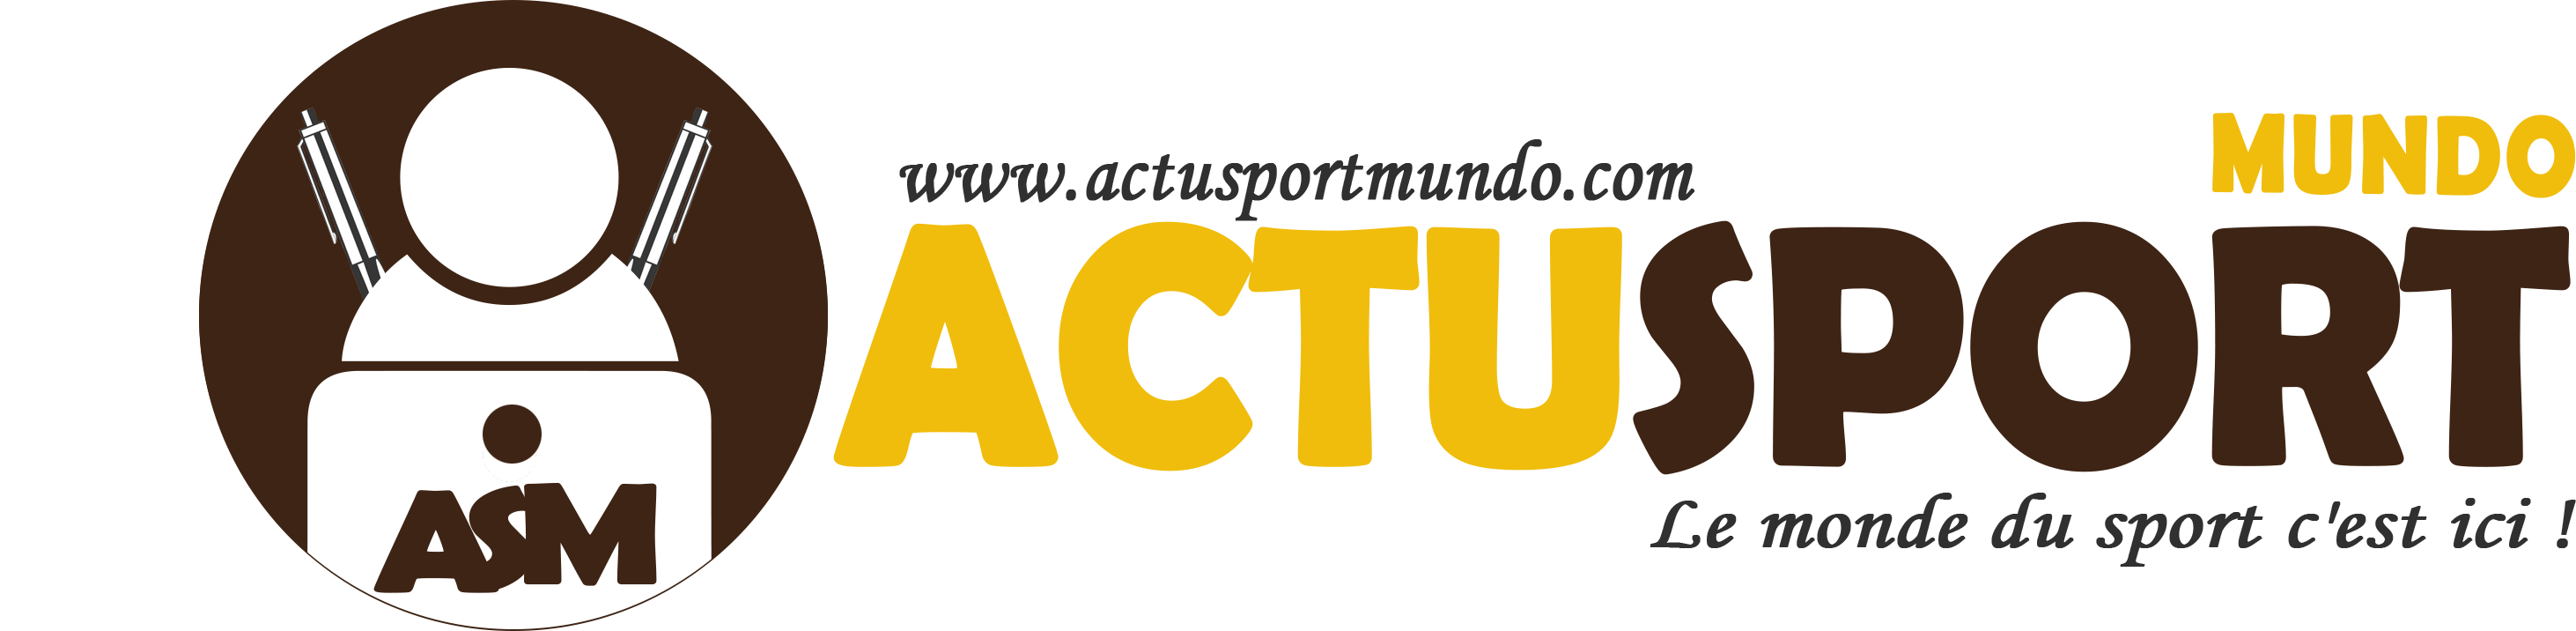 Actu Sport Mundo